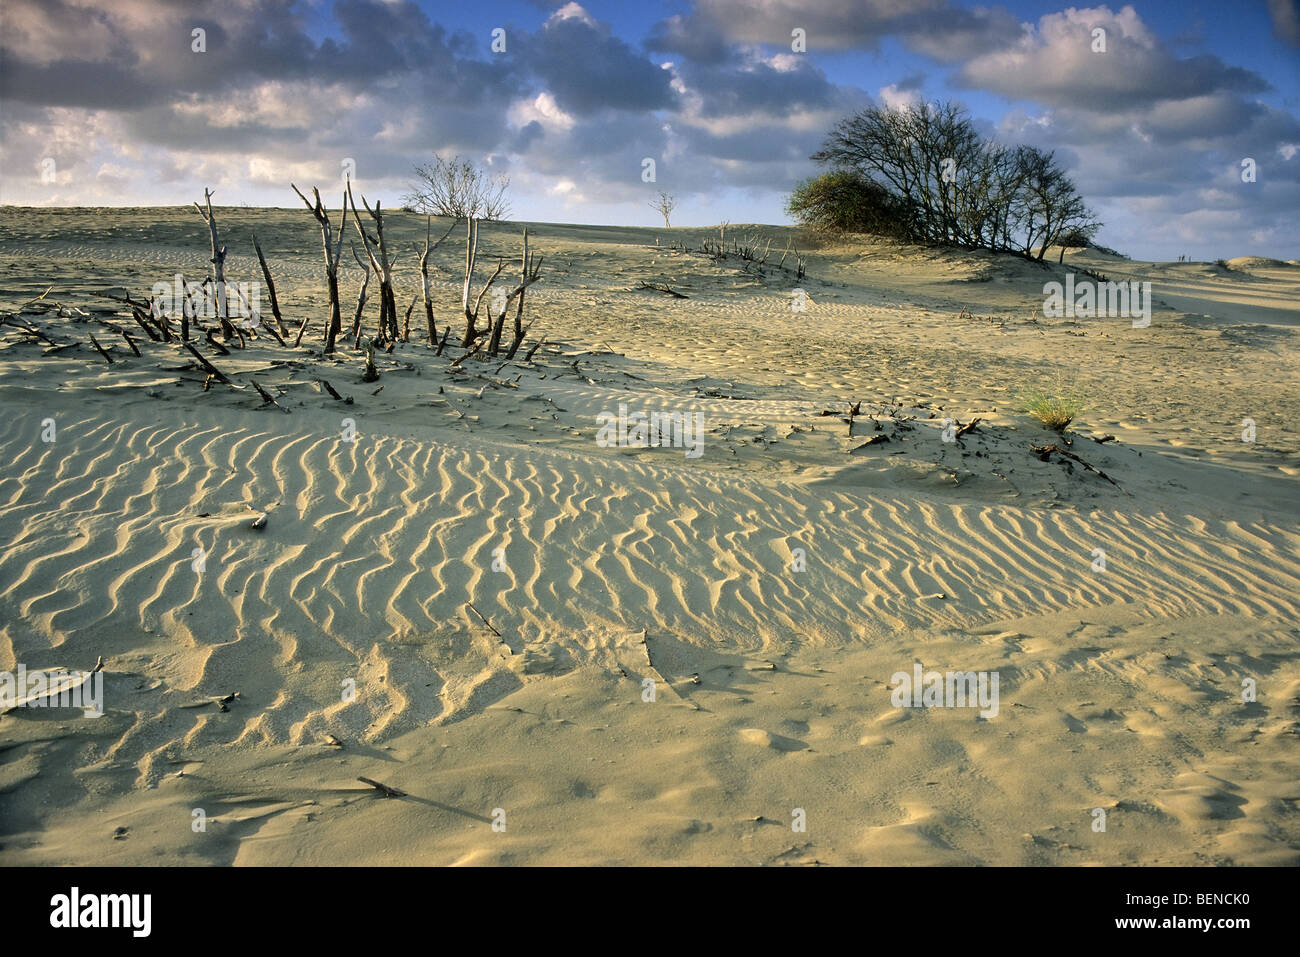 https://c8.alamy.com/comp/BENCK0/sand-ripples-in-the-dunes-de-westhoek-de-panne-belgium-BENCK0.jpg